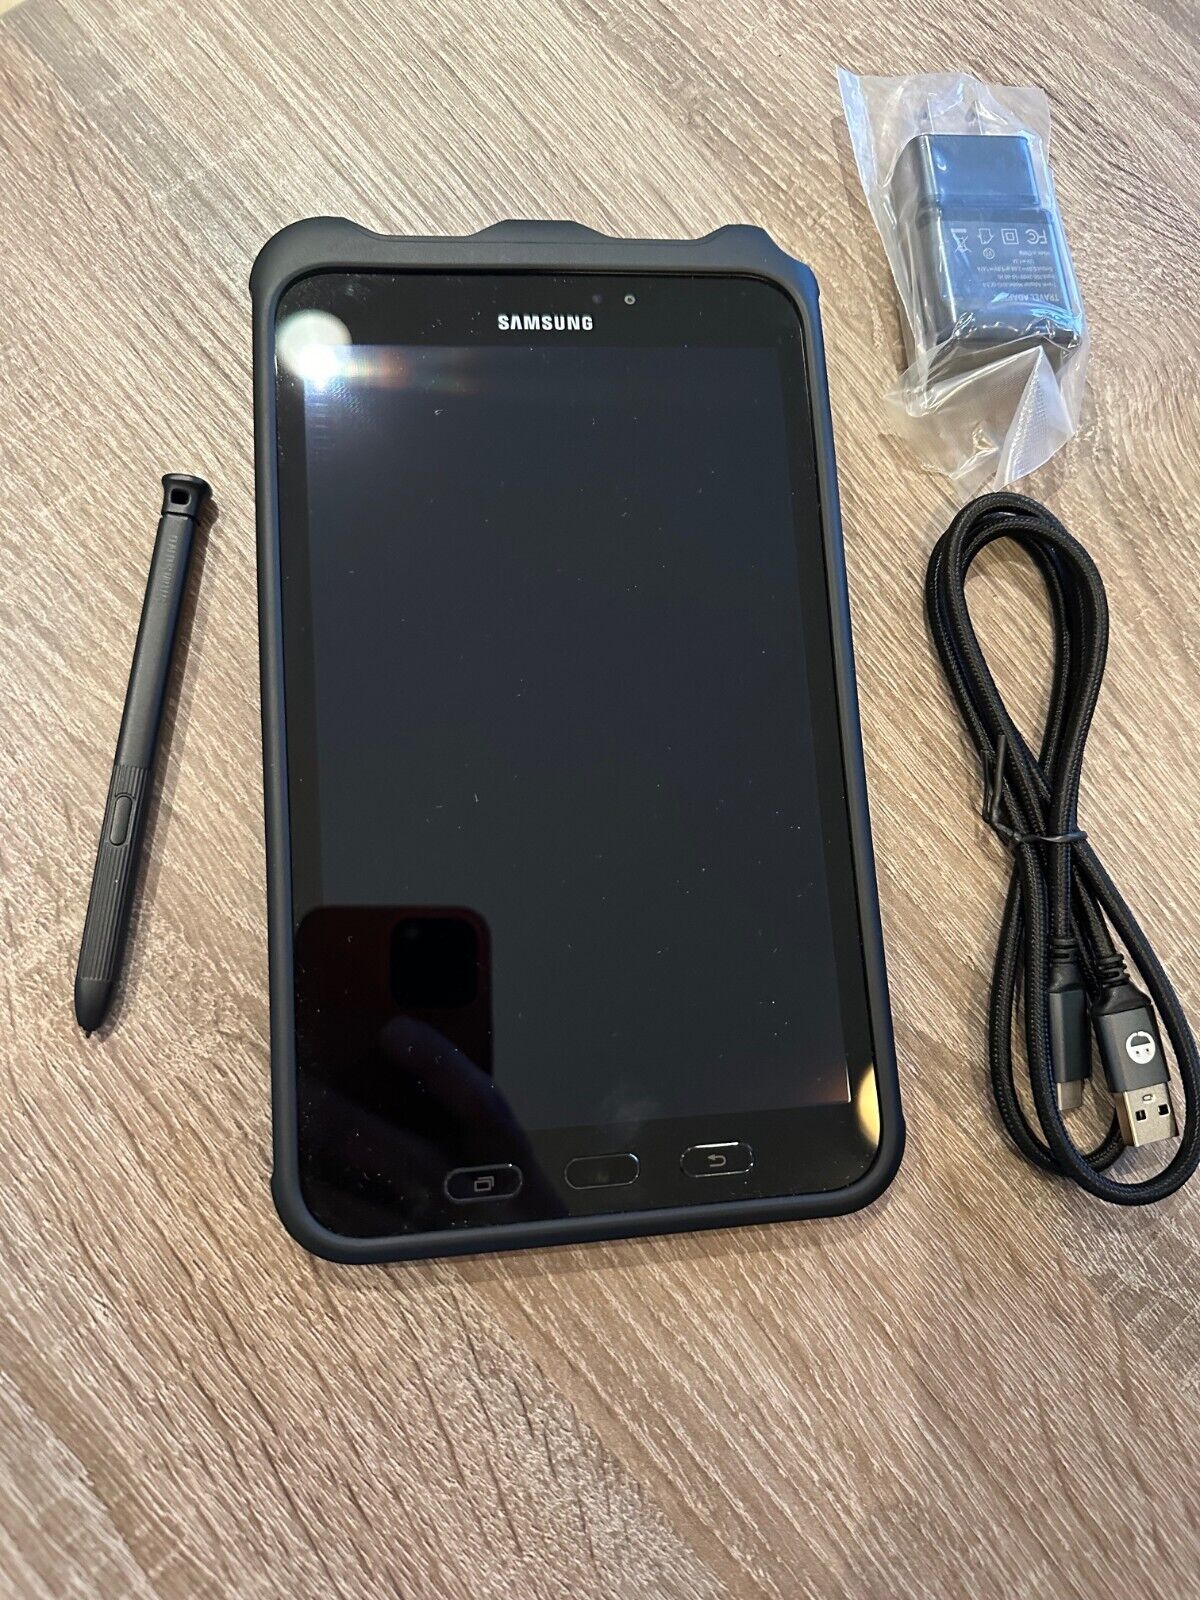 RB Samsung Galaxy Tab Active2 SM-T390 16GB, Wi-Fi, 8 inch - Black W/ S PEN